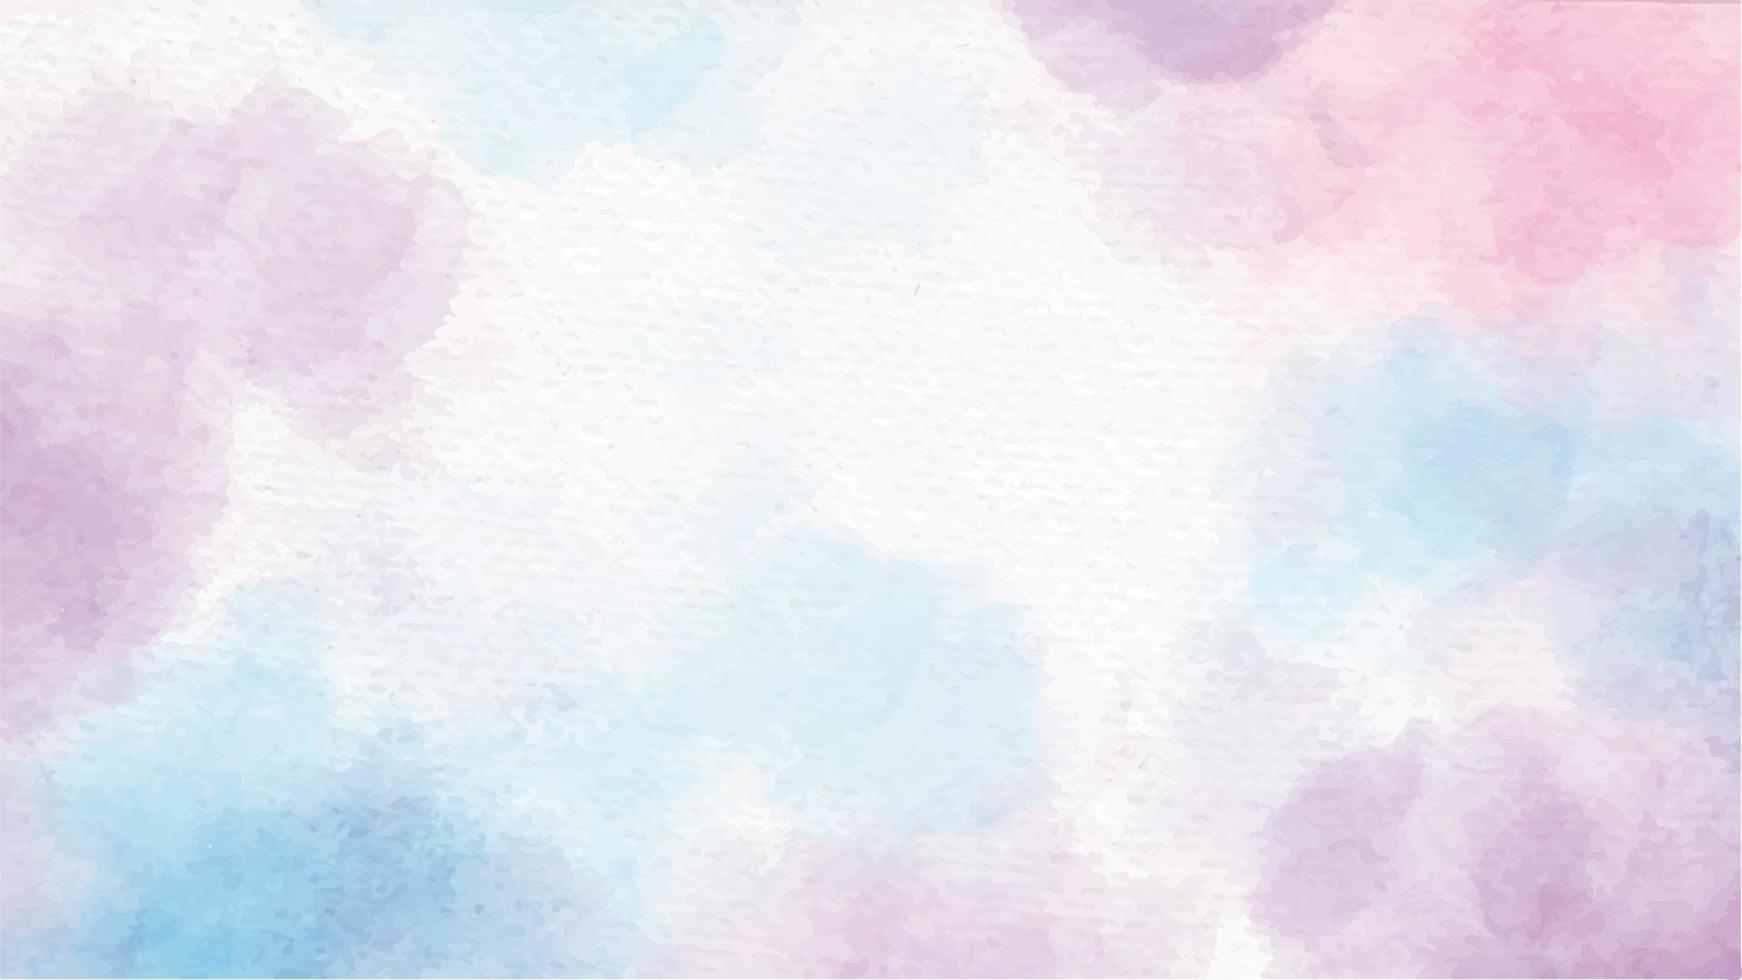 kleurrijke aquarel eenhoorn suikerspin splash op papier achtergrond vector